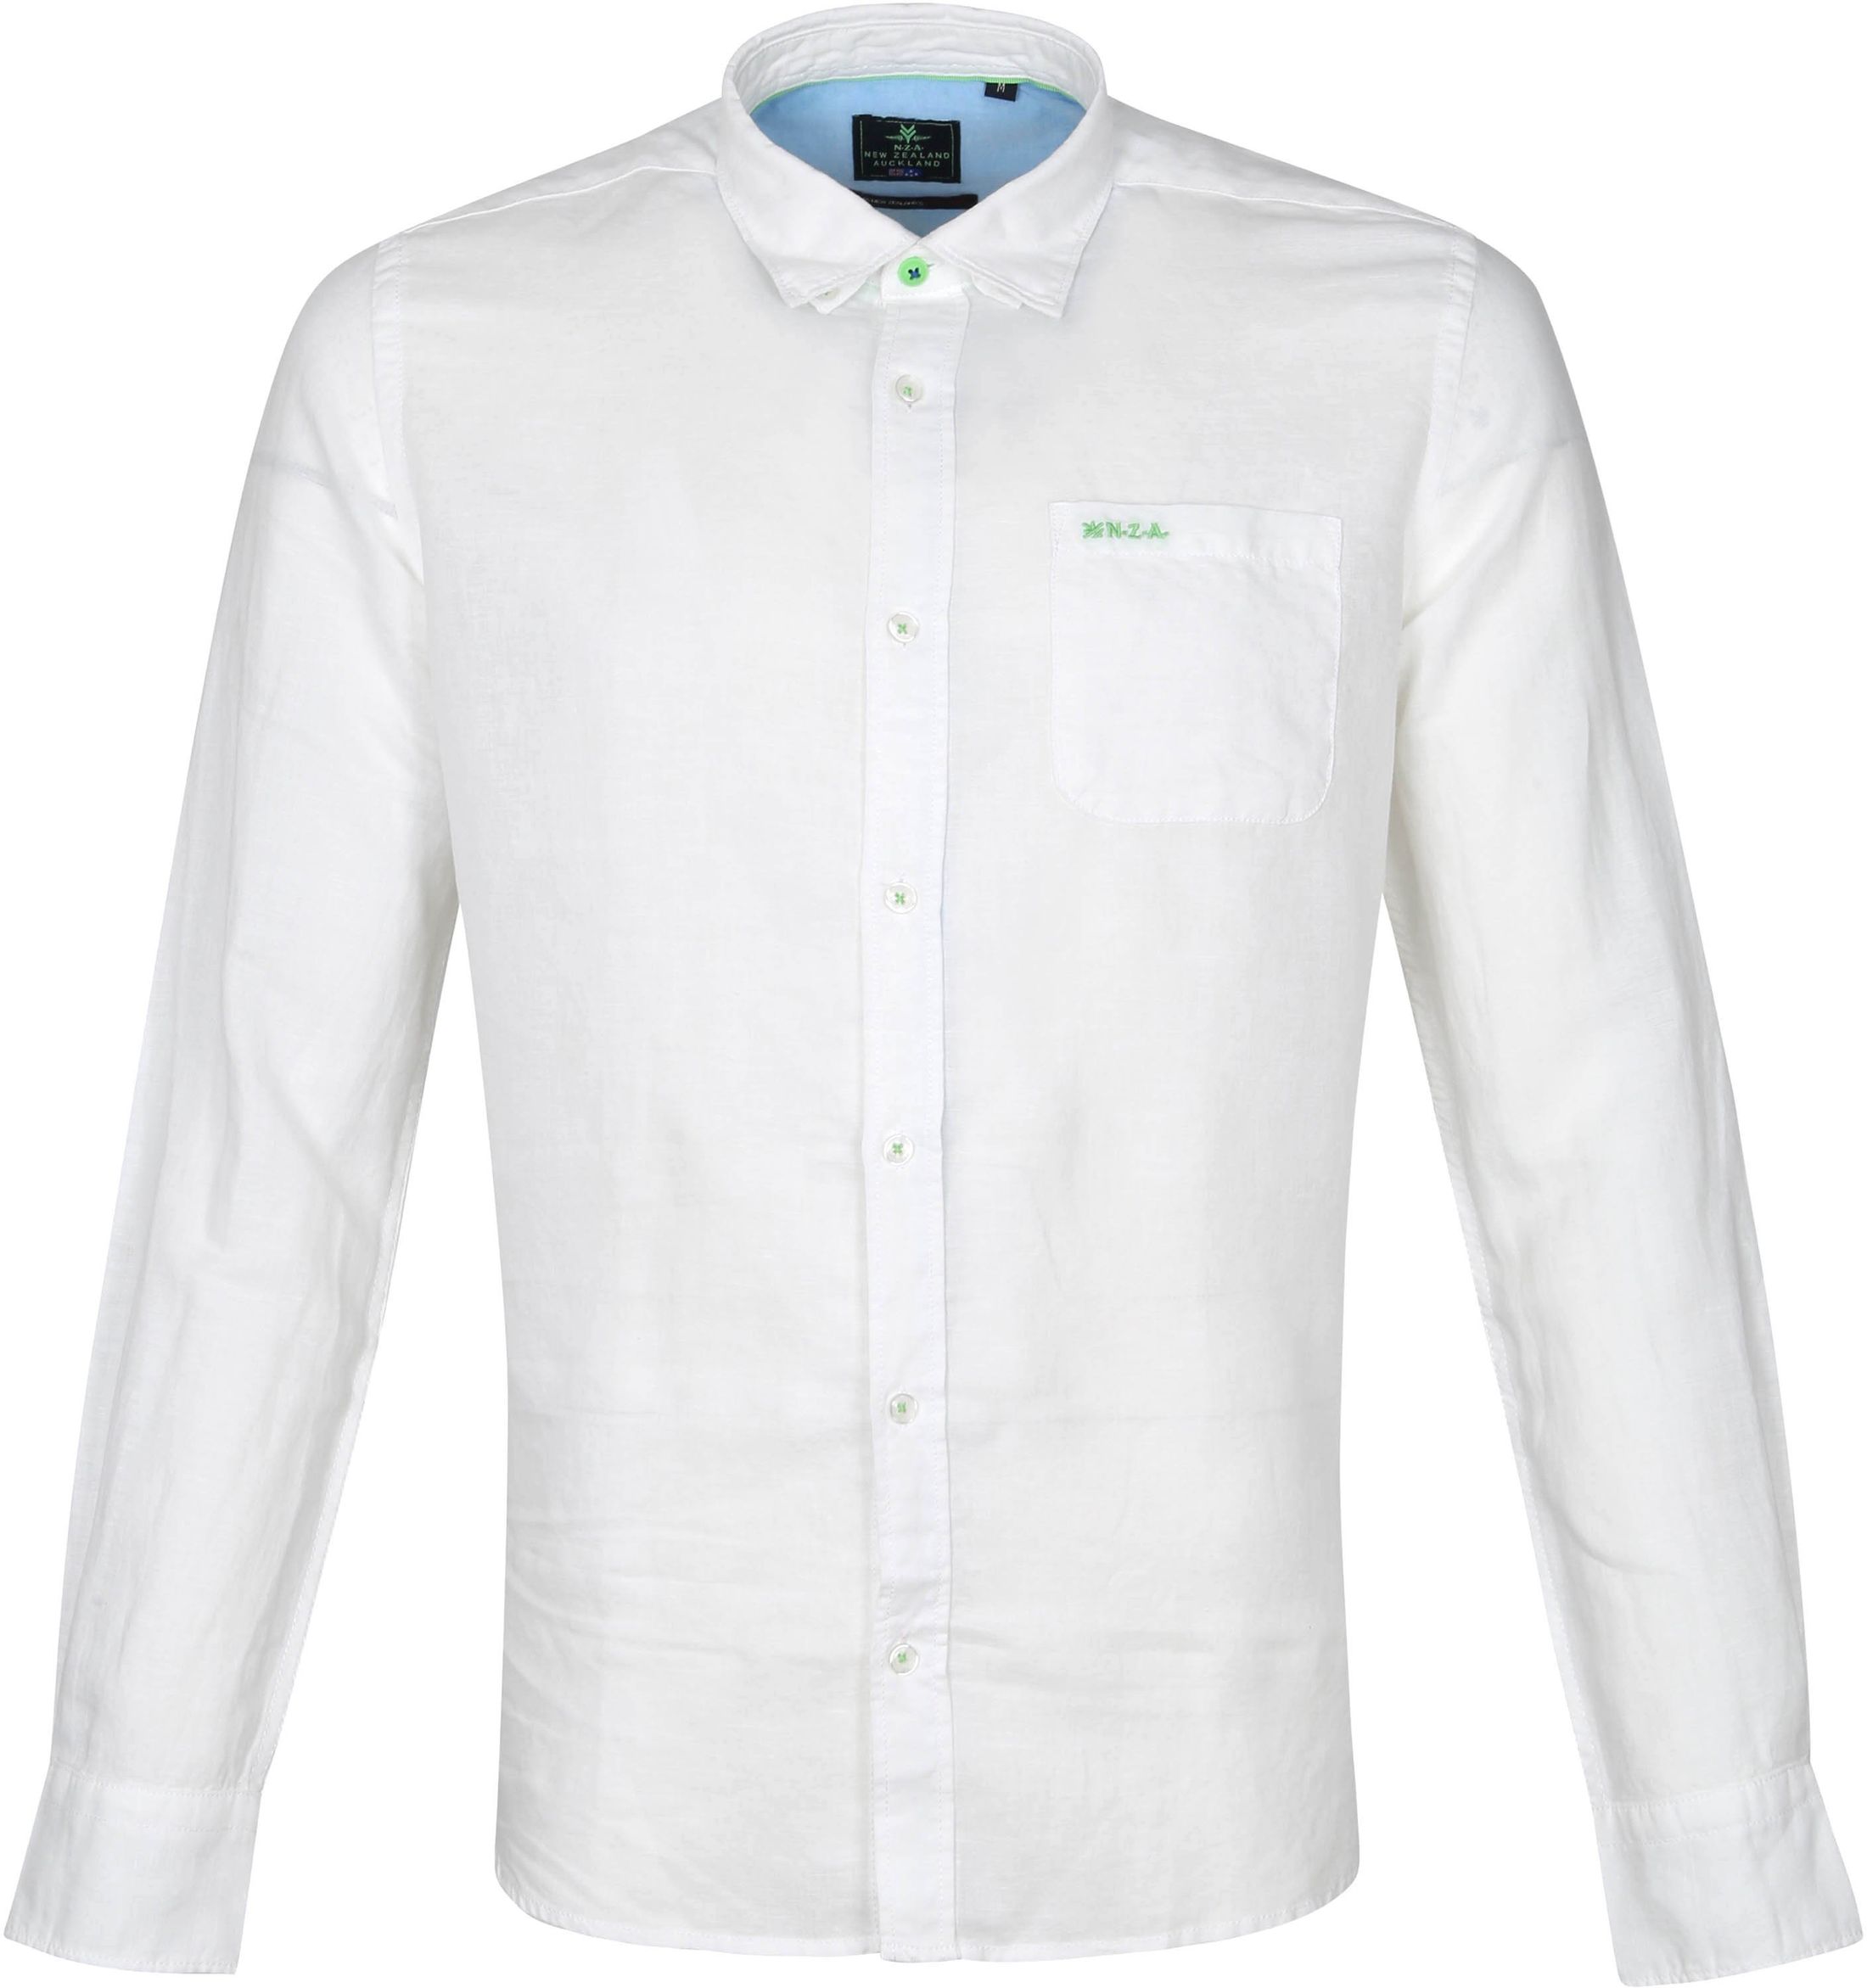 NZA Shirt Edward White size L